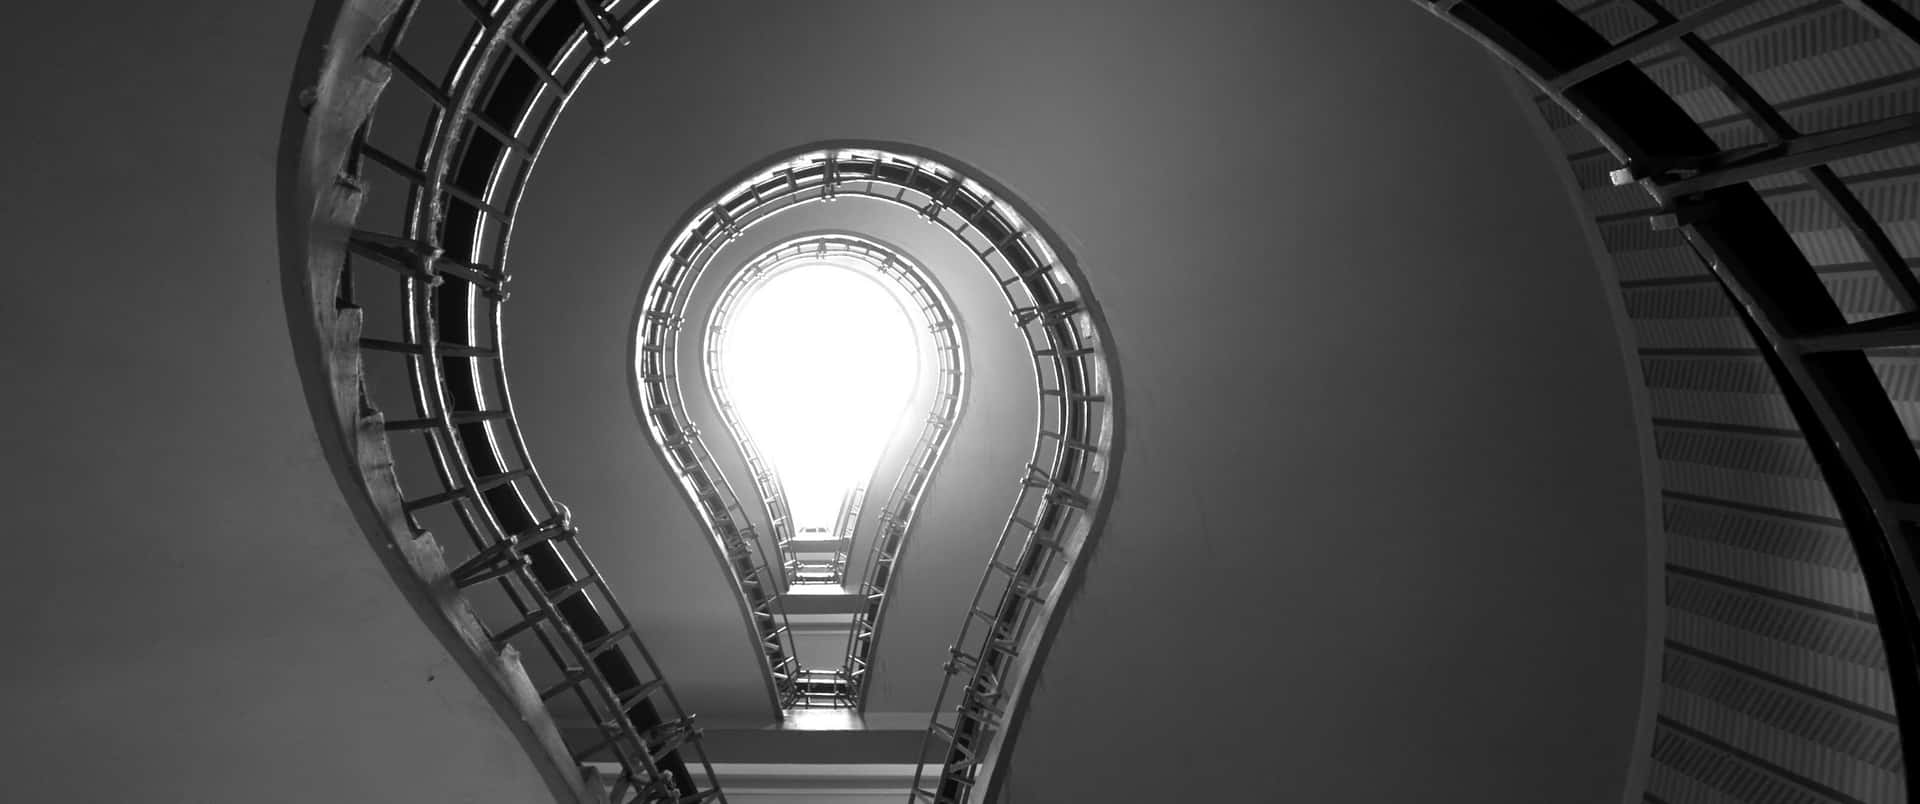 Etsort-hvidt Billede Af En Spiraltrappe.